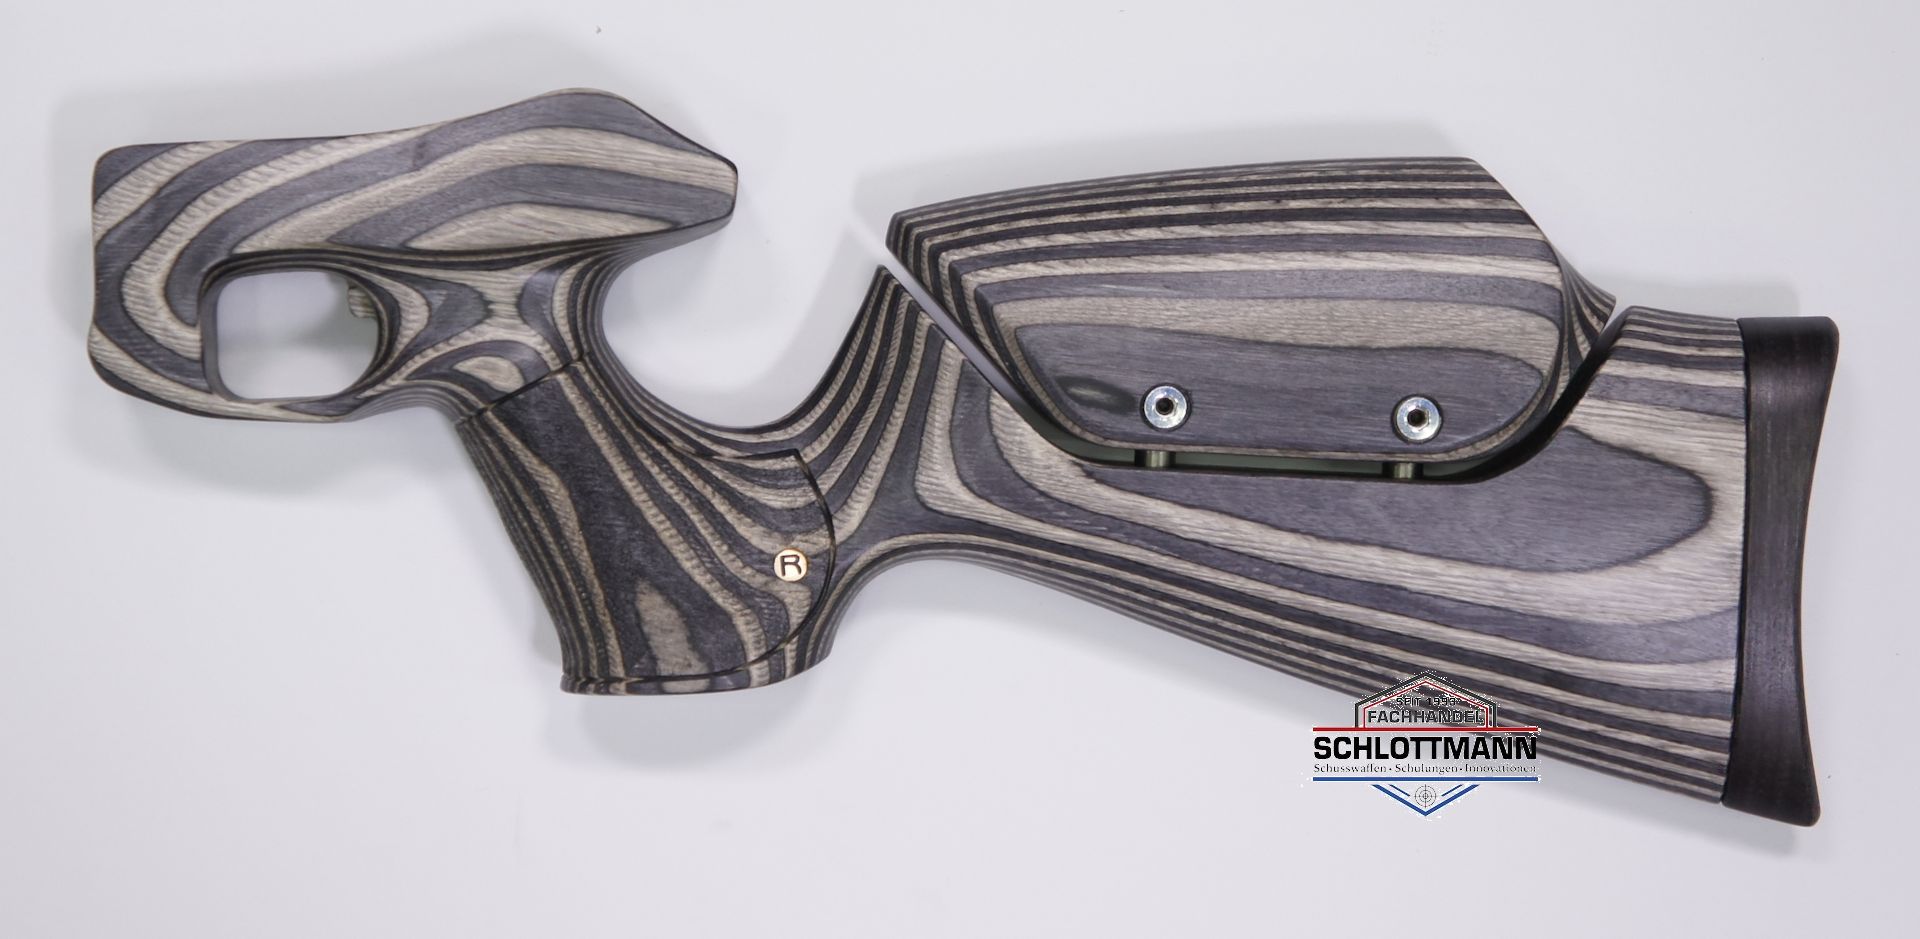 Anschlagschaft für CO2 Pistole Diana Airbug aus schwarz-grauem Schichtholz mit verstellbarer Schaftbacke